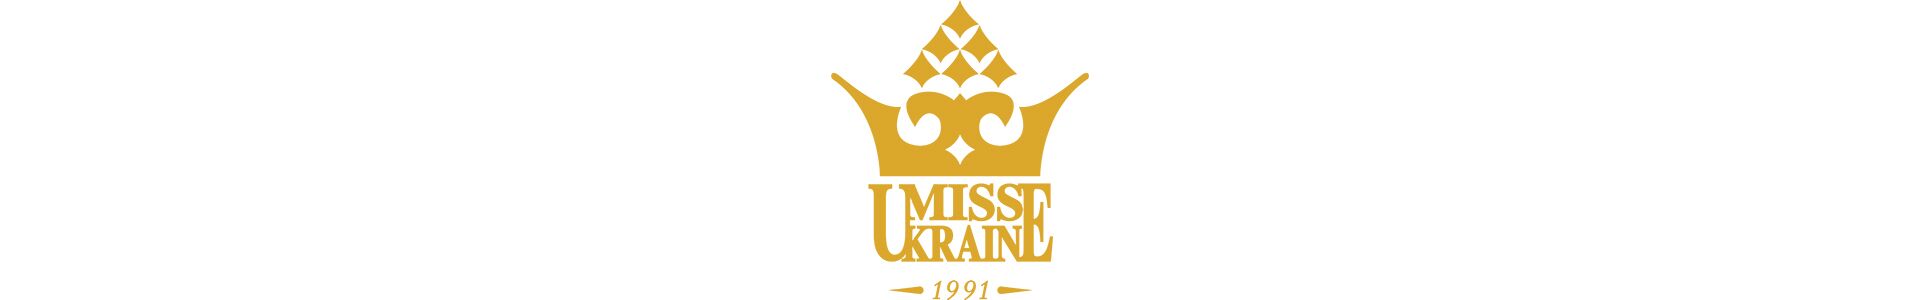 Міс Україна 2016 Олександра Кучеренко стала провідною на ICTV